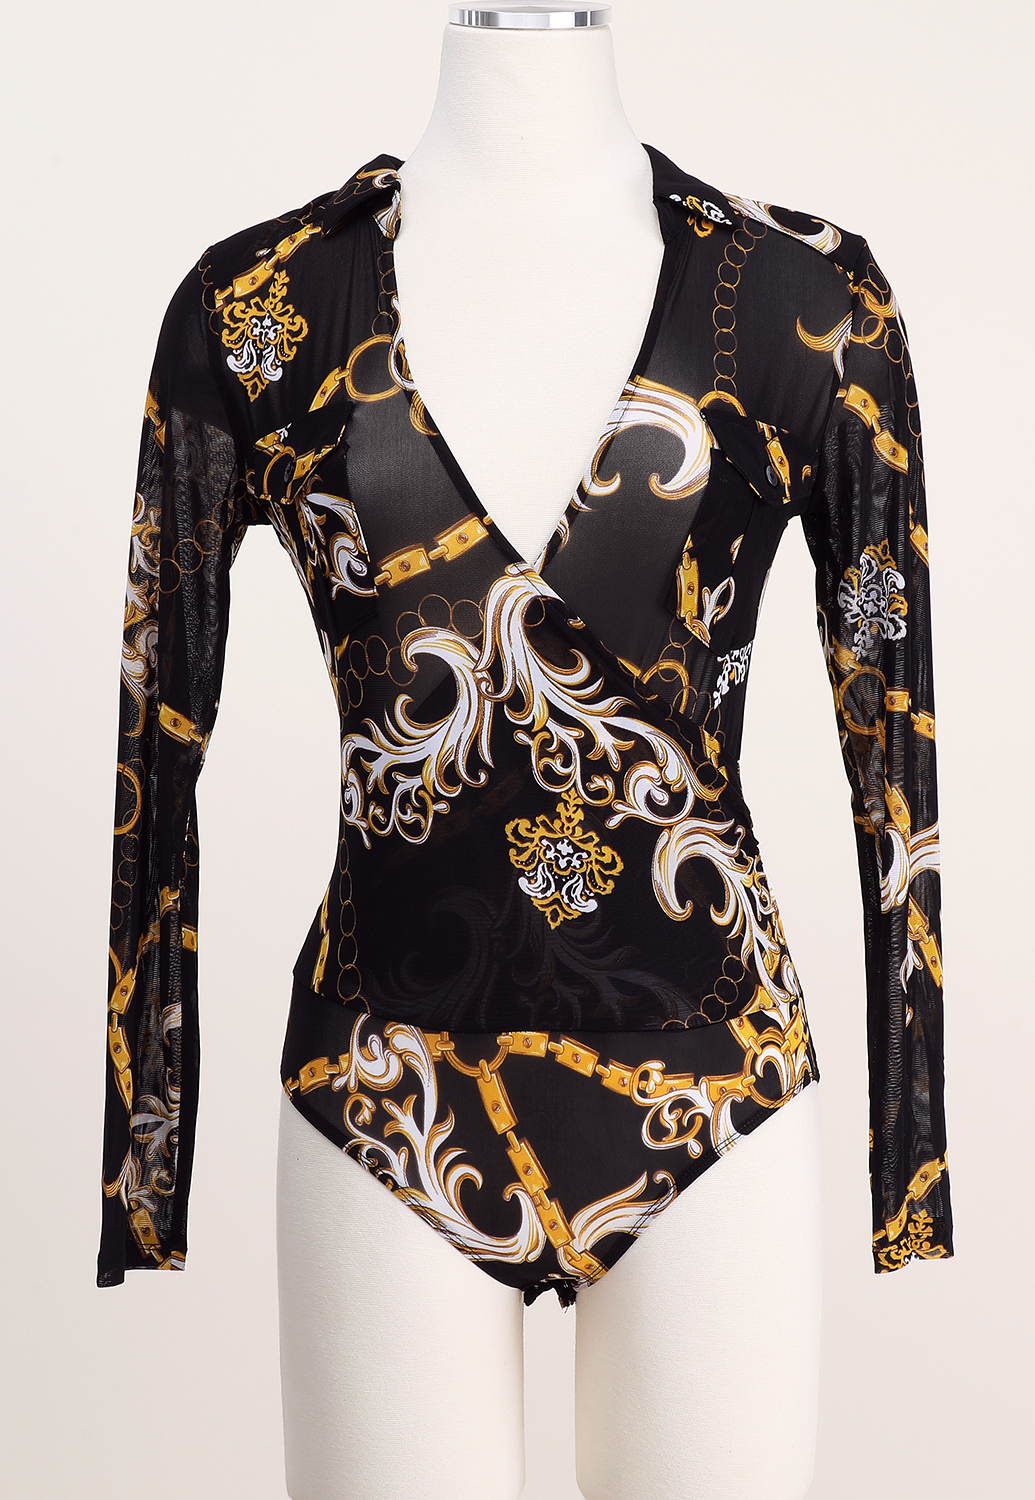 Sheer Mesh Ornate Print Bodysuit 